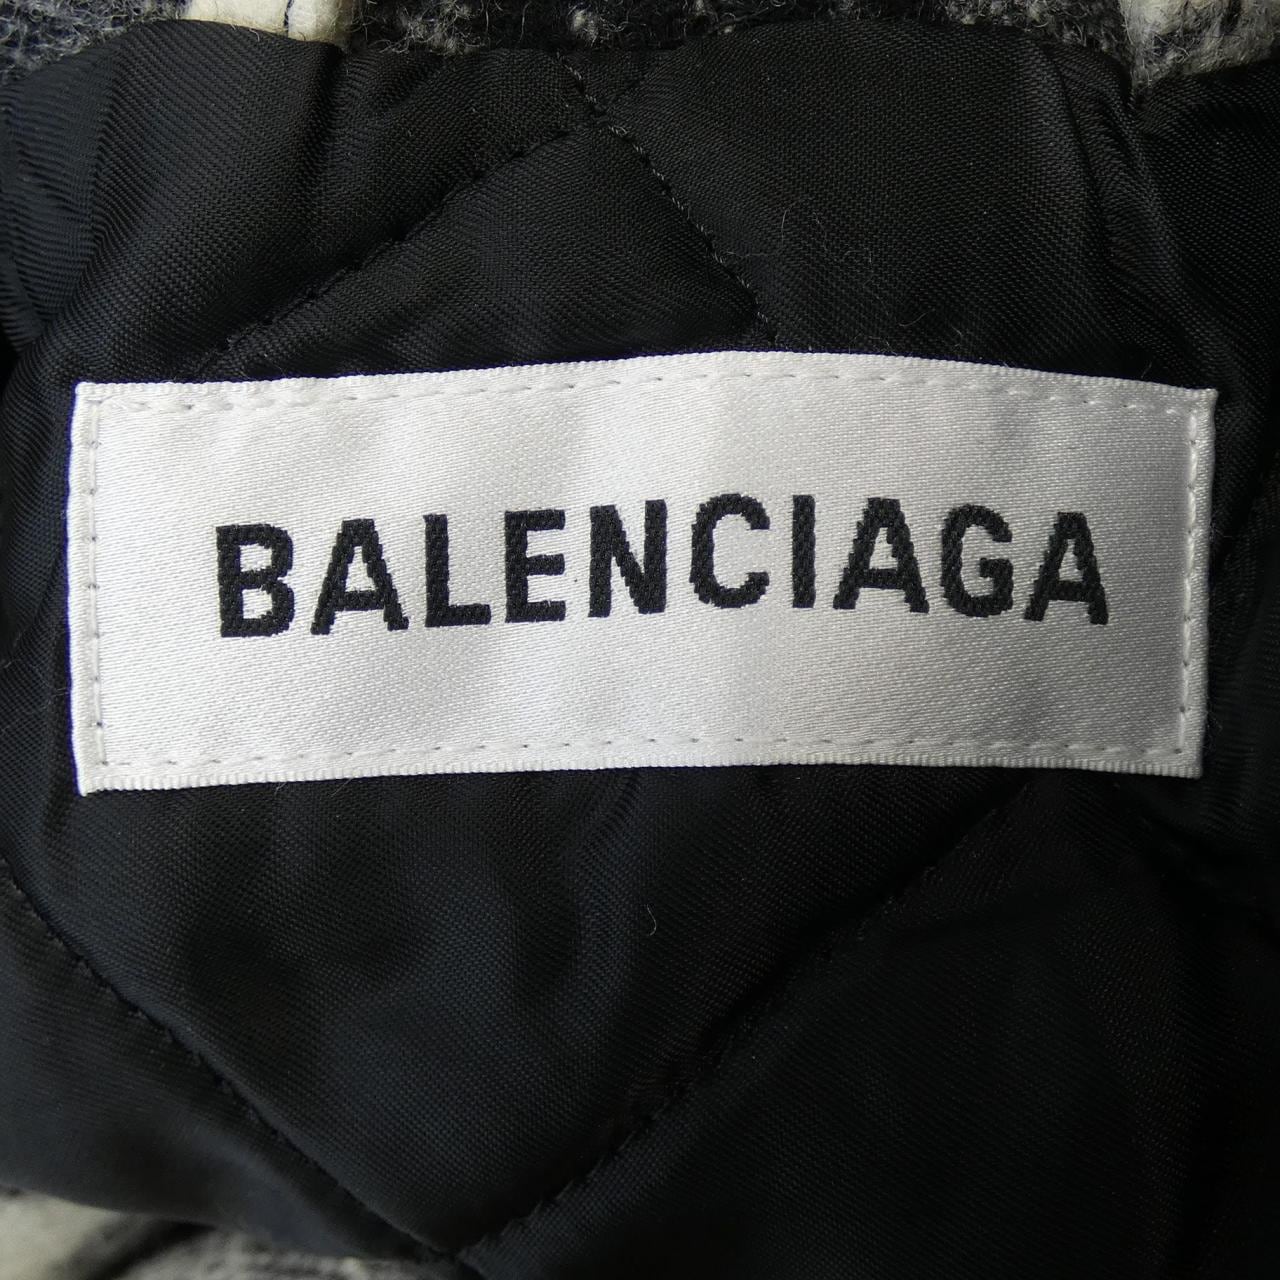 BALENCIAGA BALENCIAGA COURT